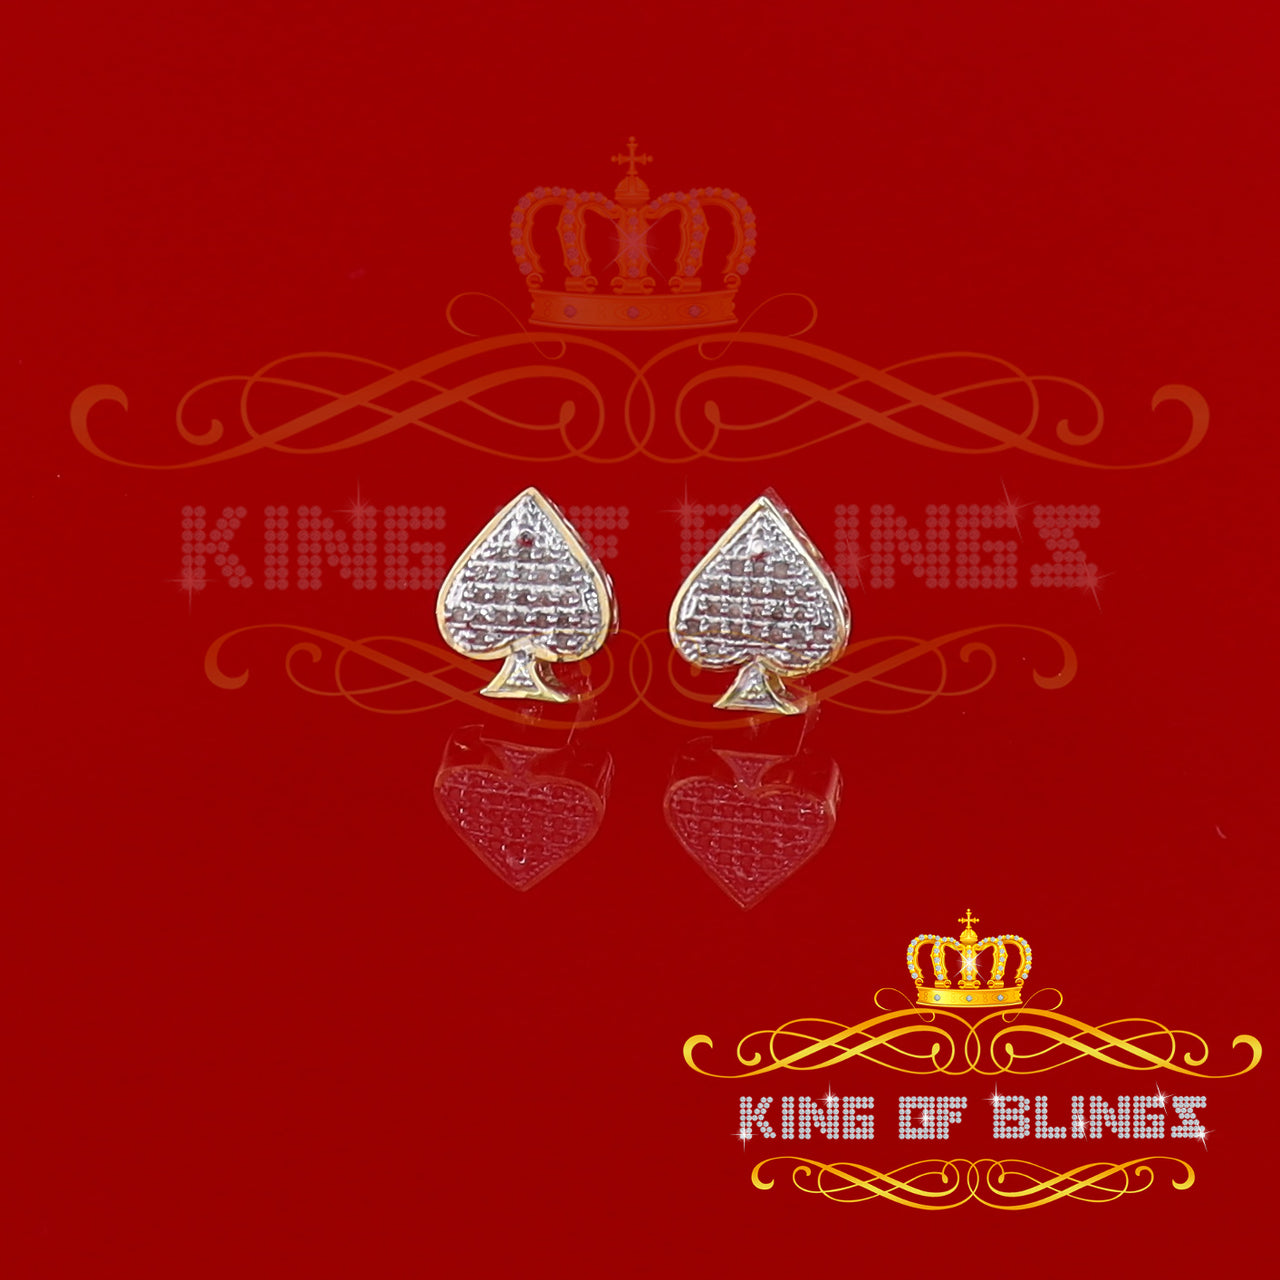 King of Blings-925 Sterling Silver Yellow 0.10ct Diamond For Women's / Men's Stud Heart Earring KING OF BLINGS